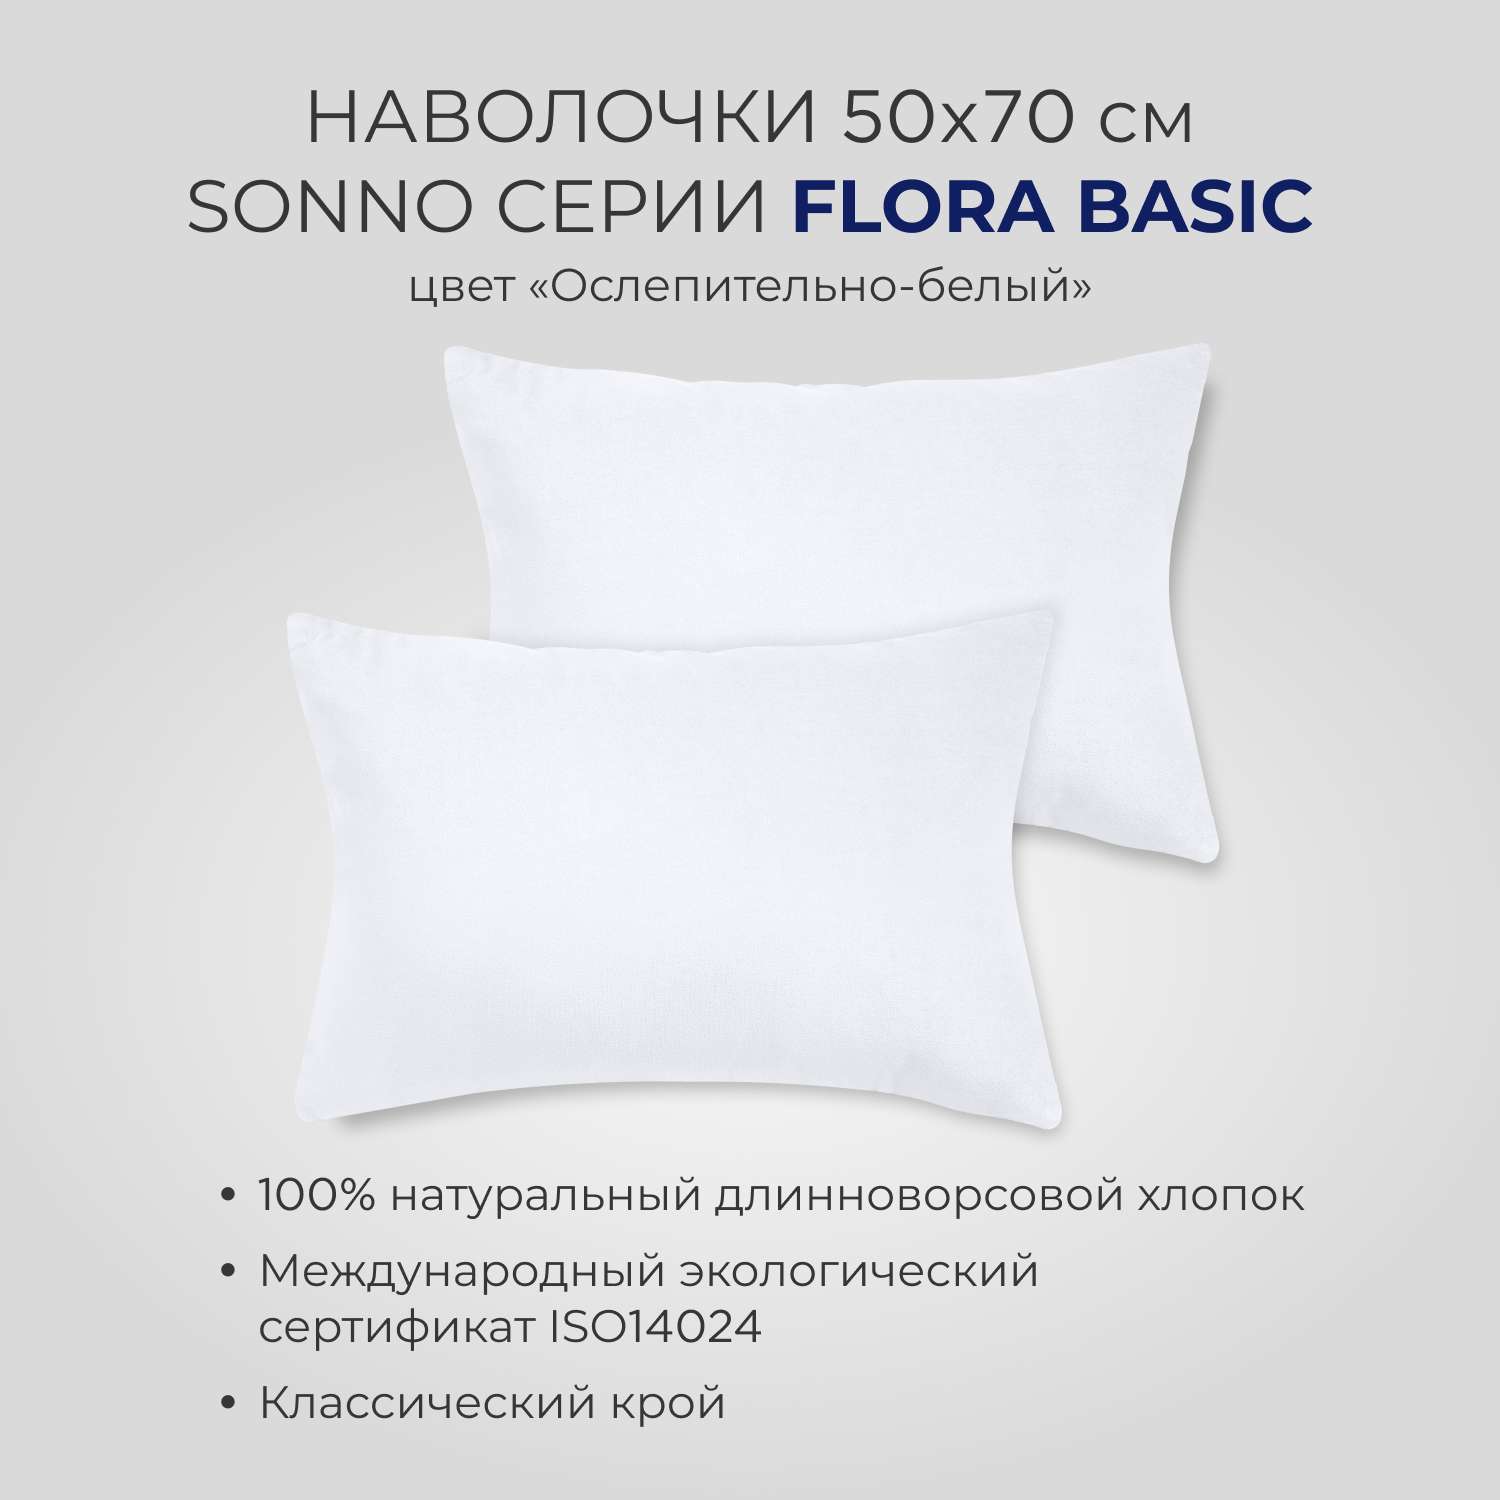 Постельное белье SONNO FLORA BASIC евро-размер цвет Ослепительно белый - фото 3